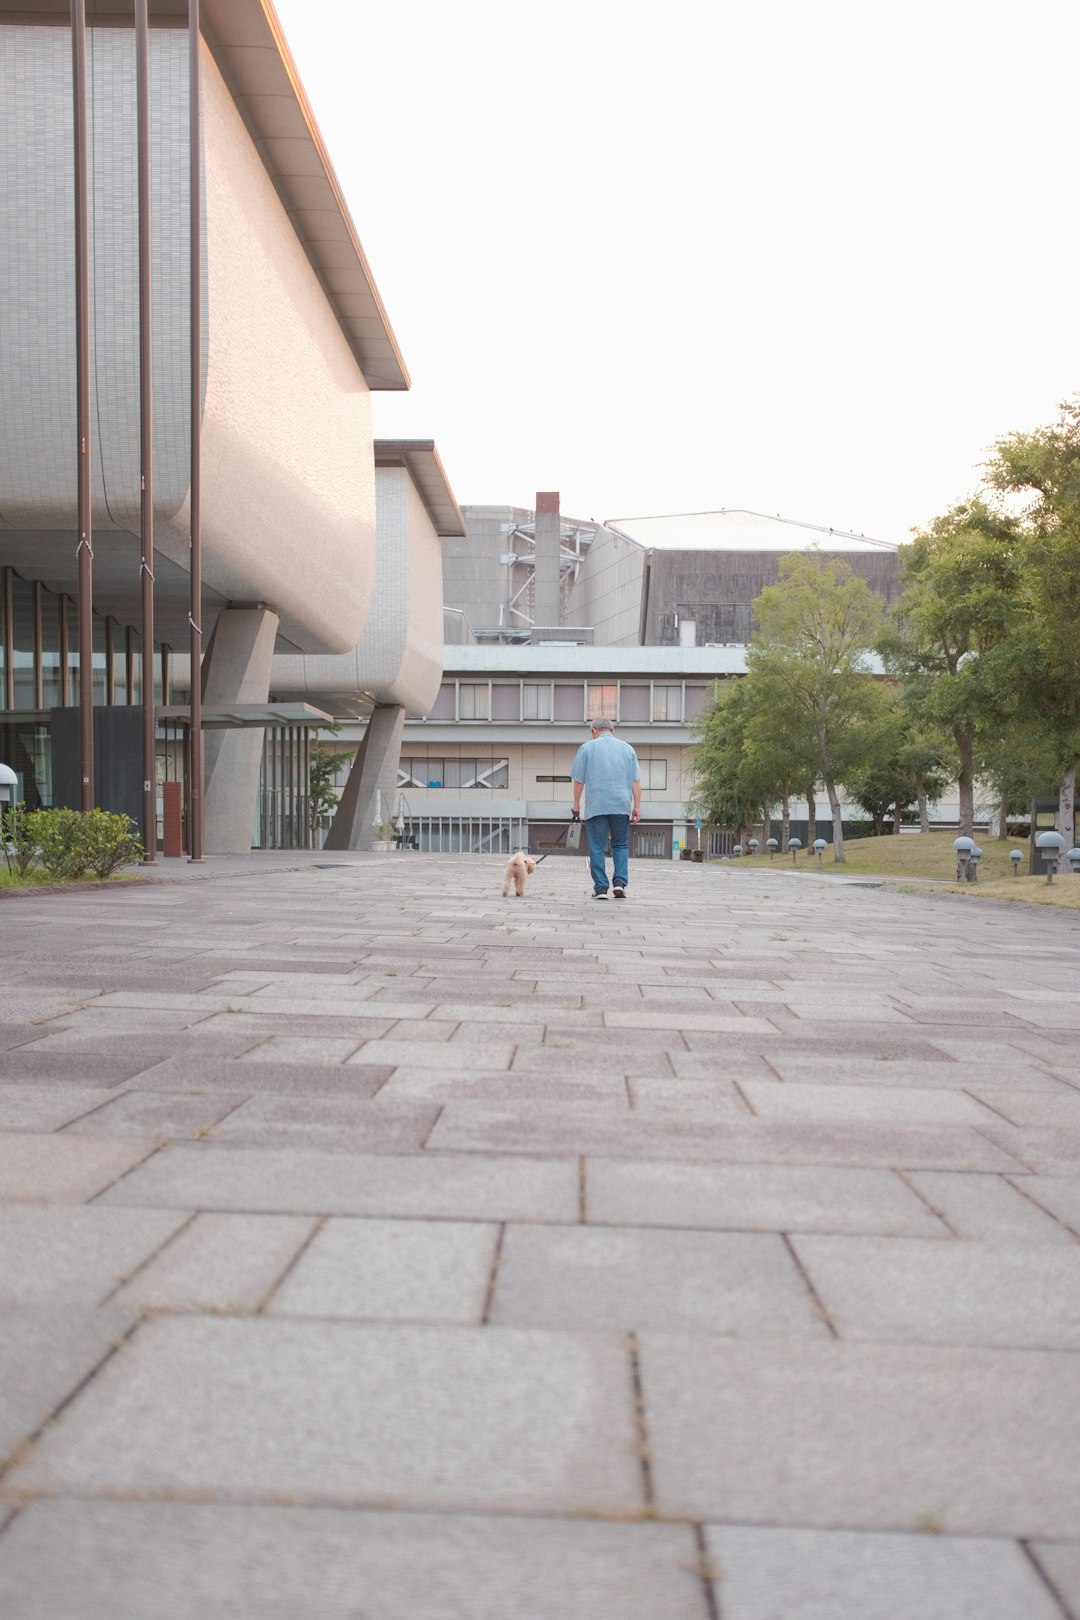 man in blue shirt walking on sidewalk during daytime